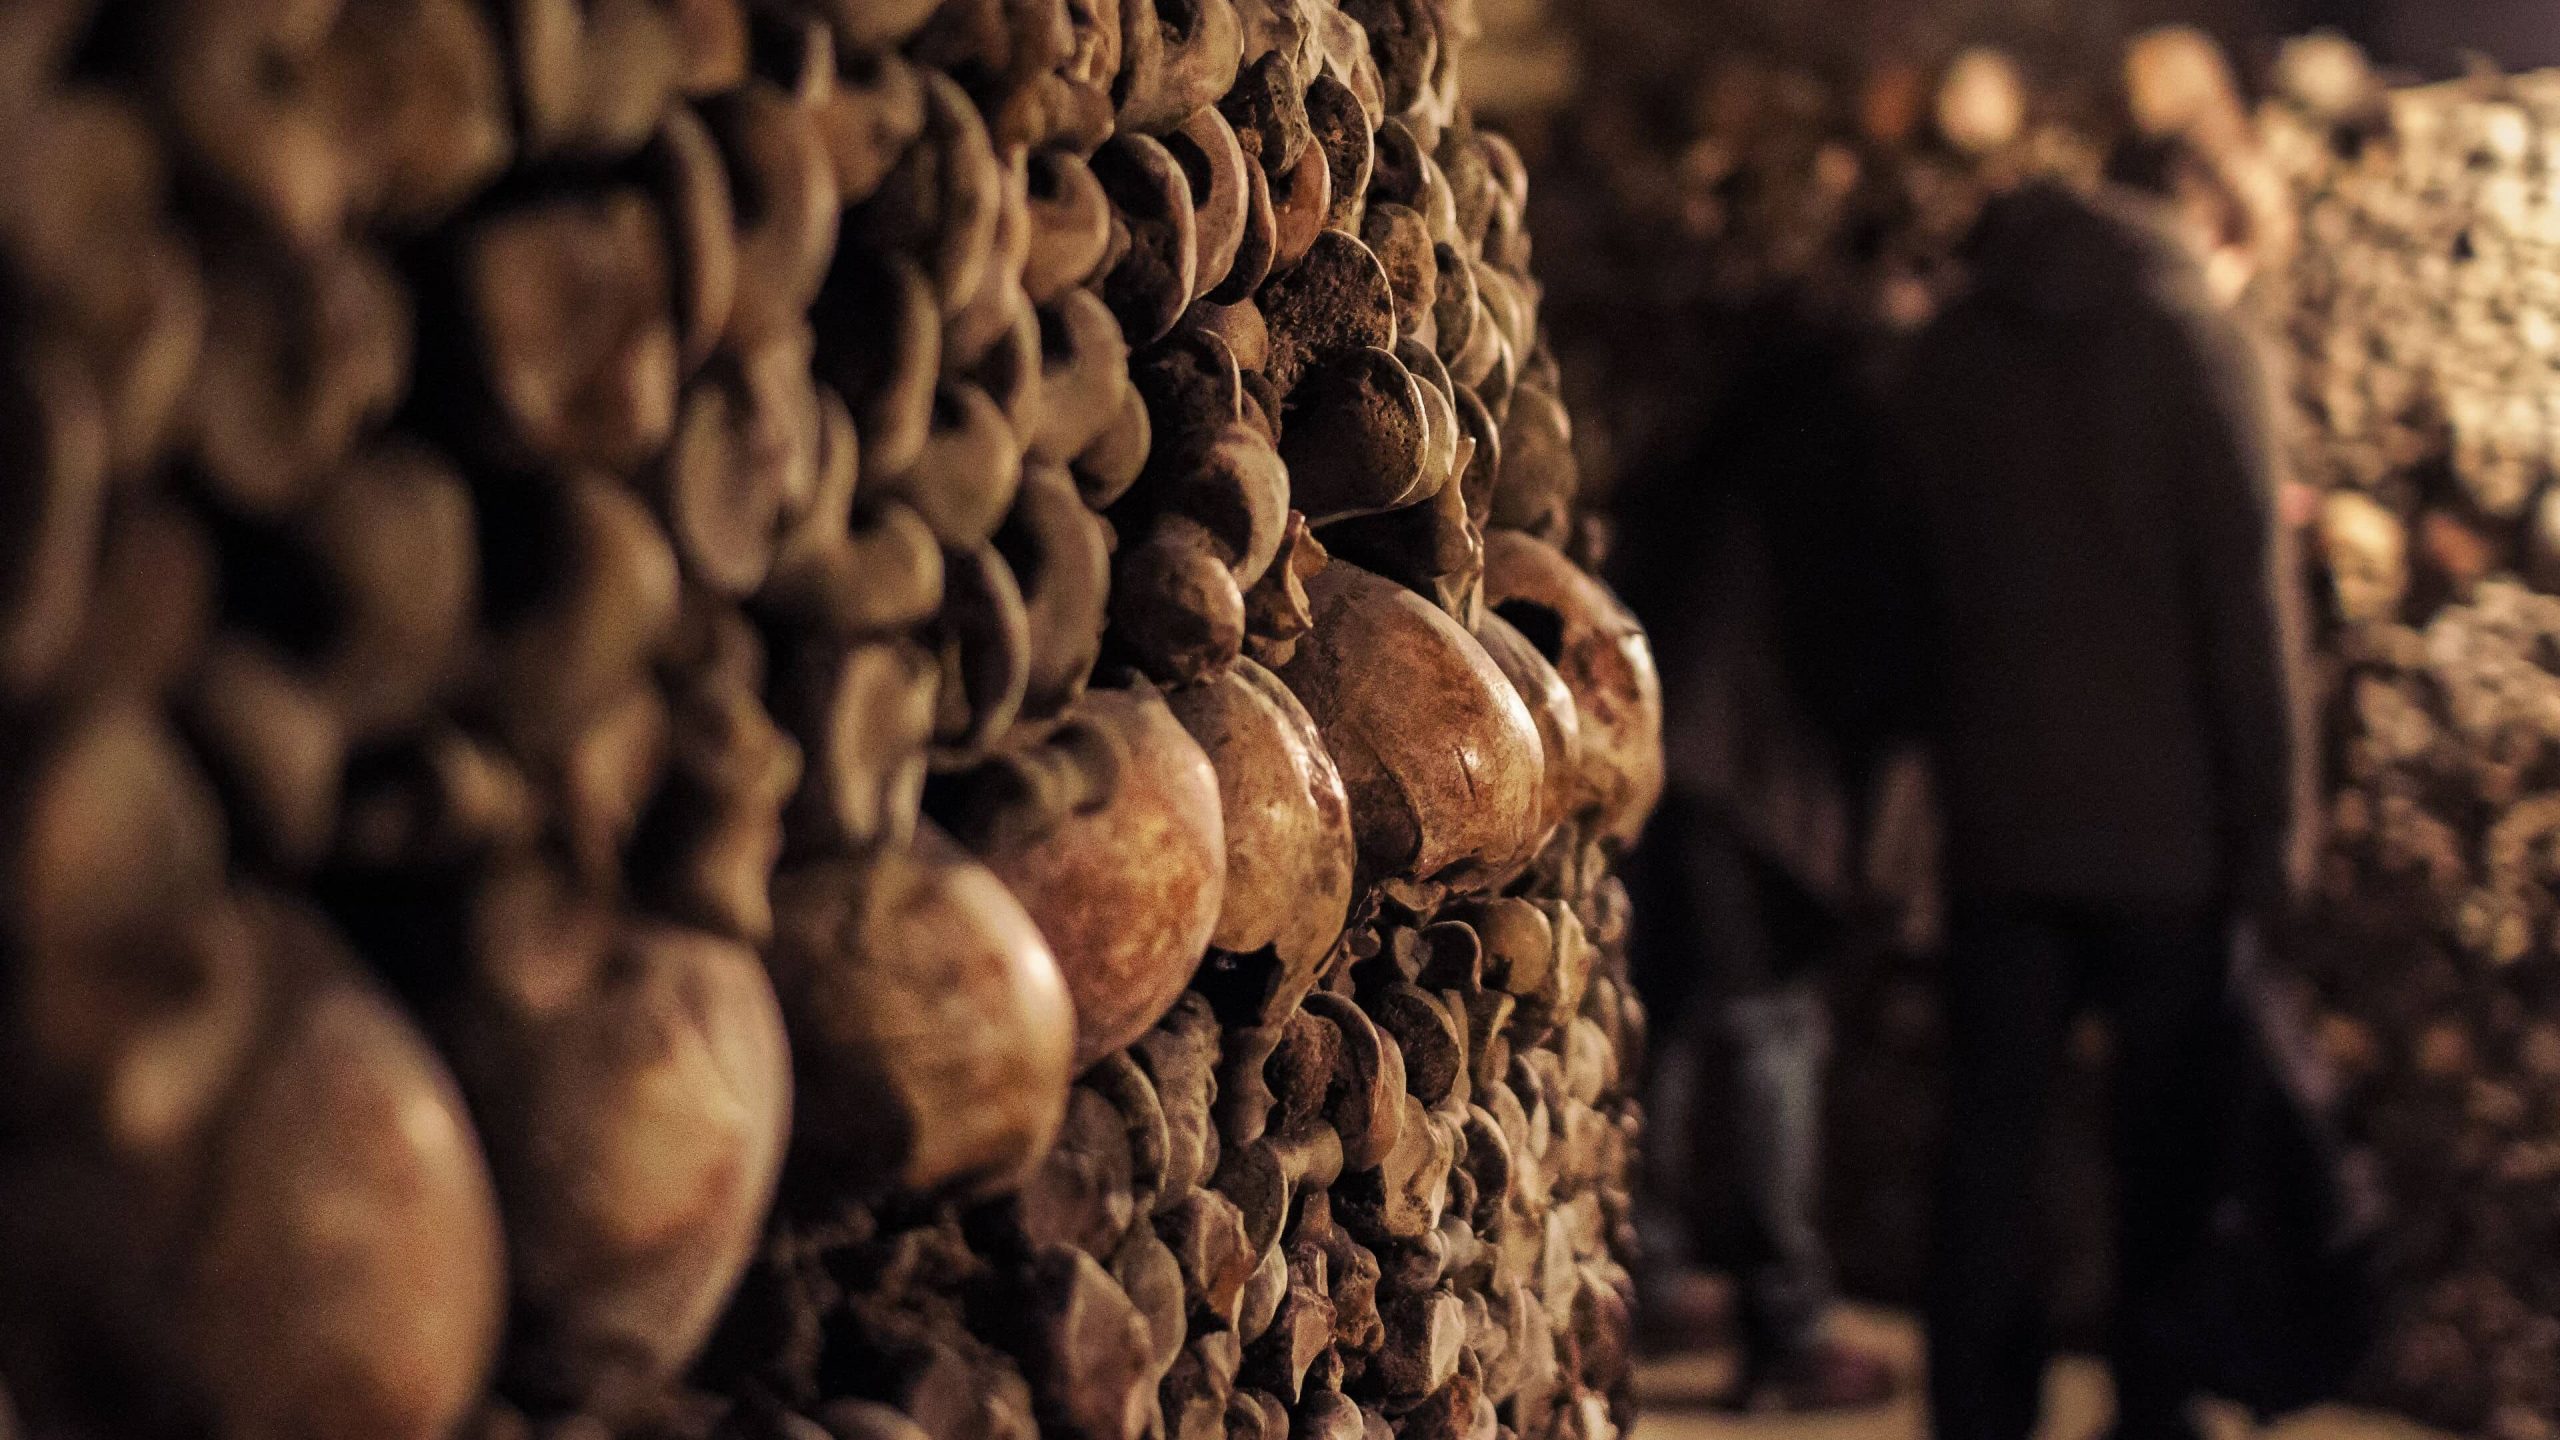 Bones in the Catacombs below Paris